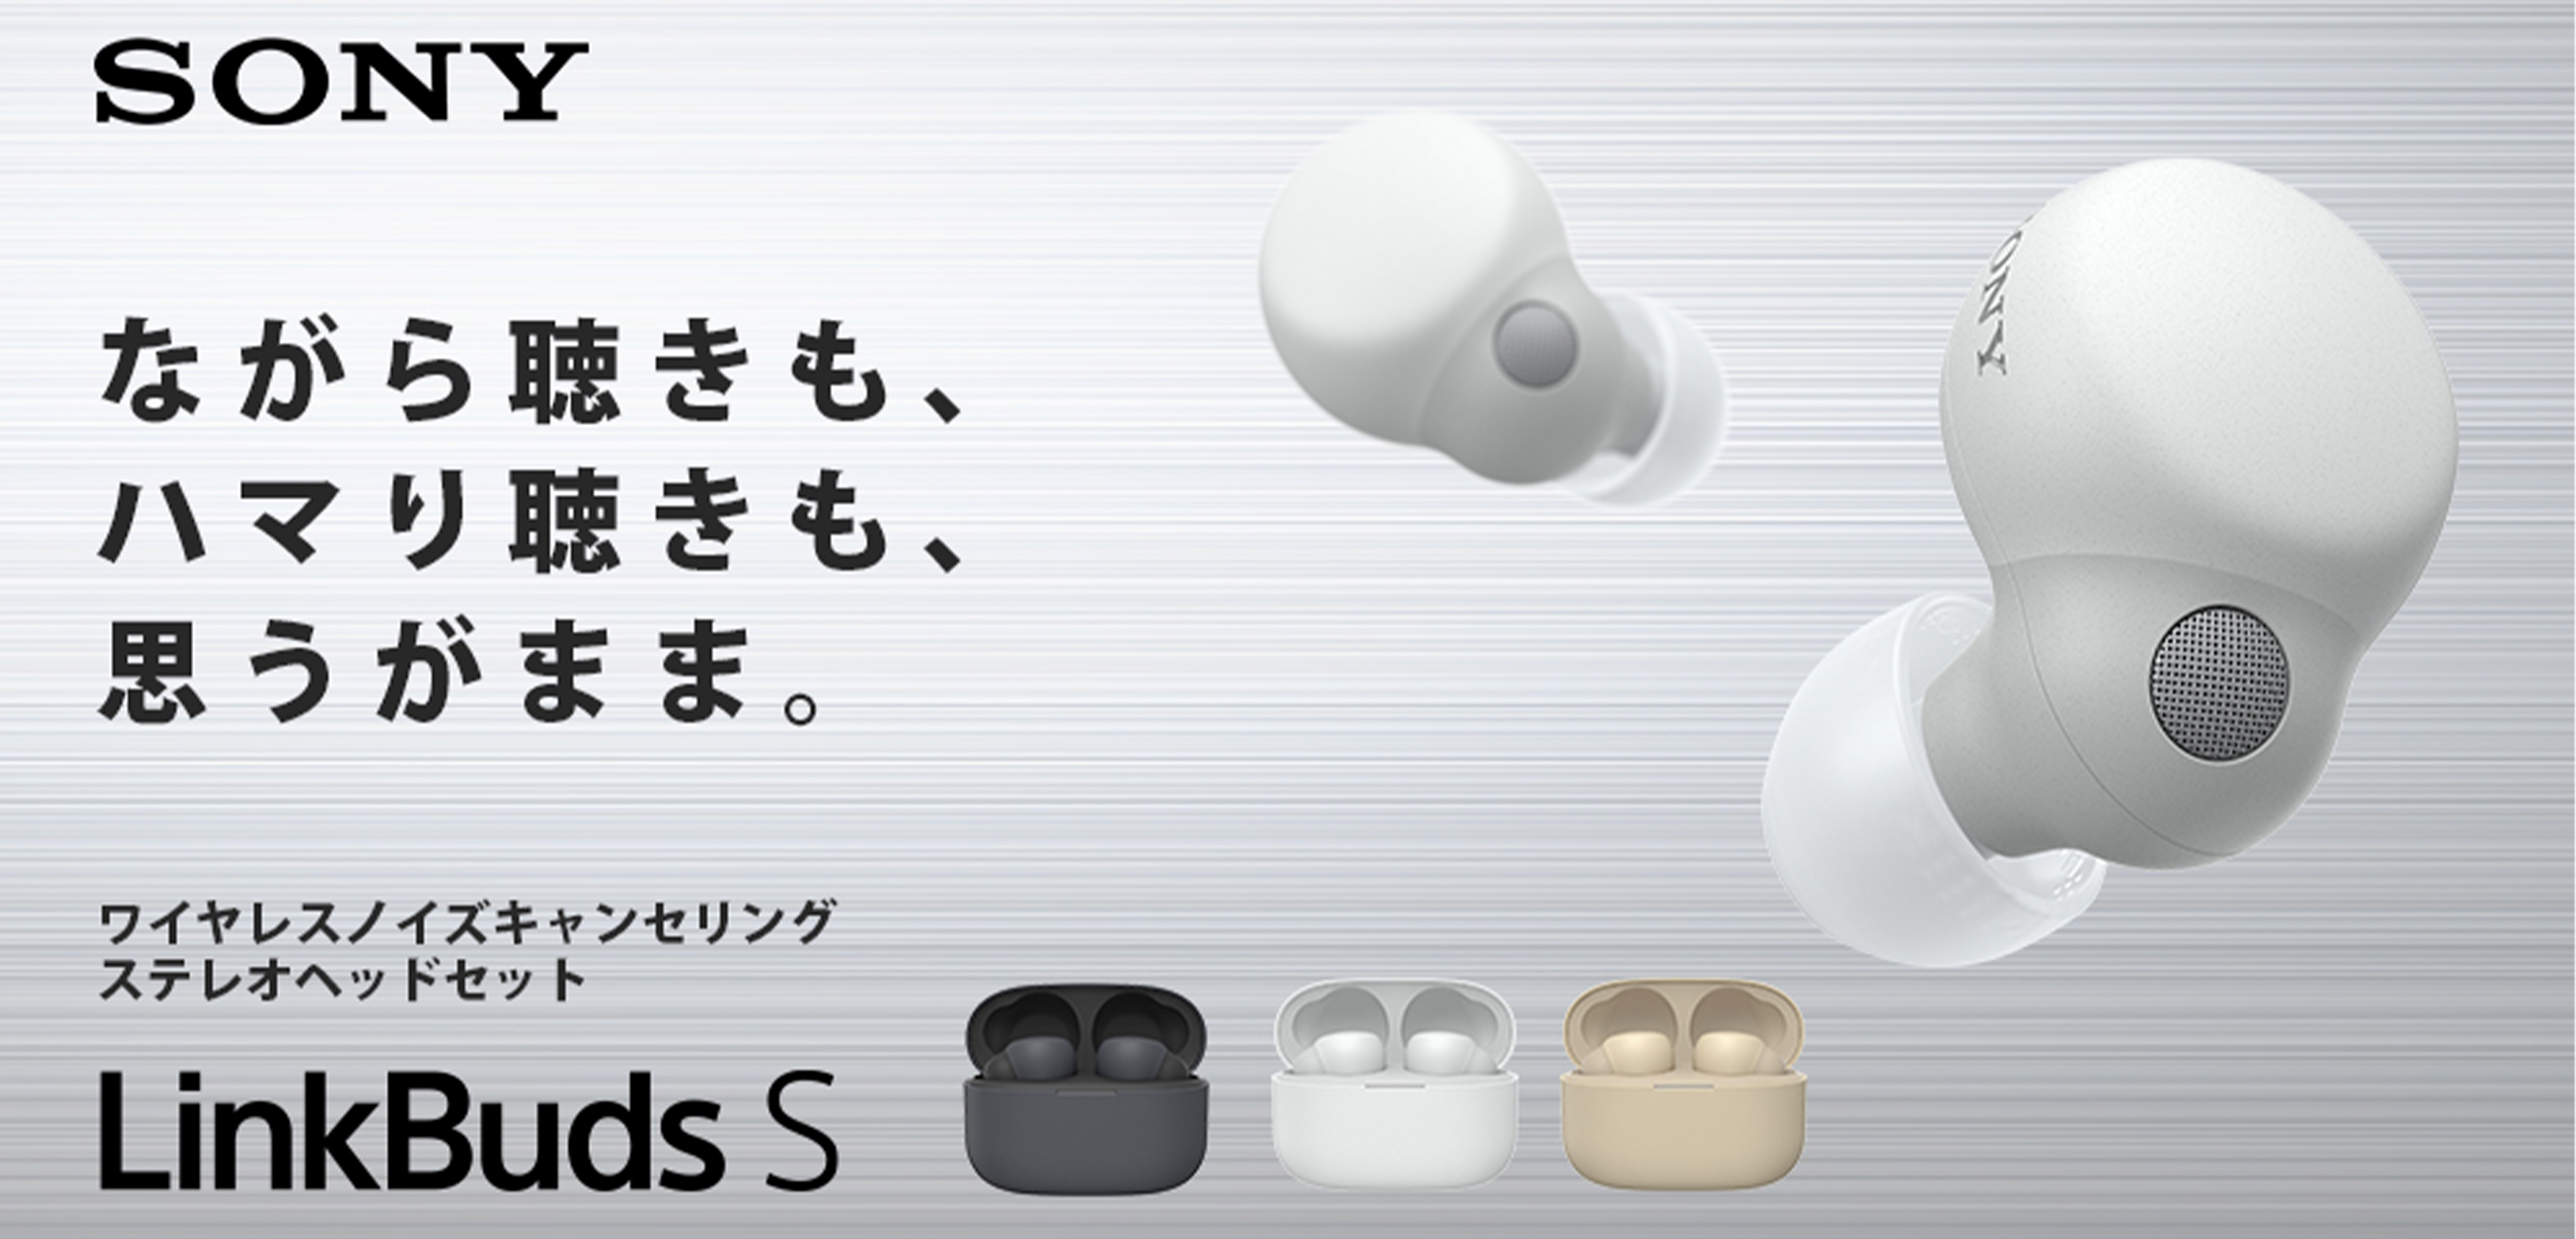 新製品】LinkBudsシリーズ最新モデルSONY LinkBuds S【WF-LS900N】が6 